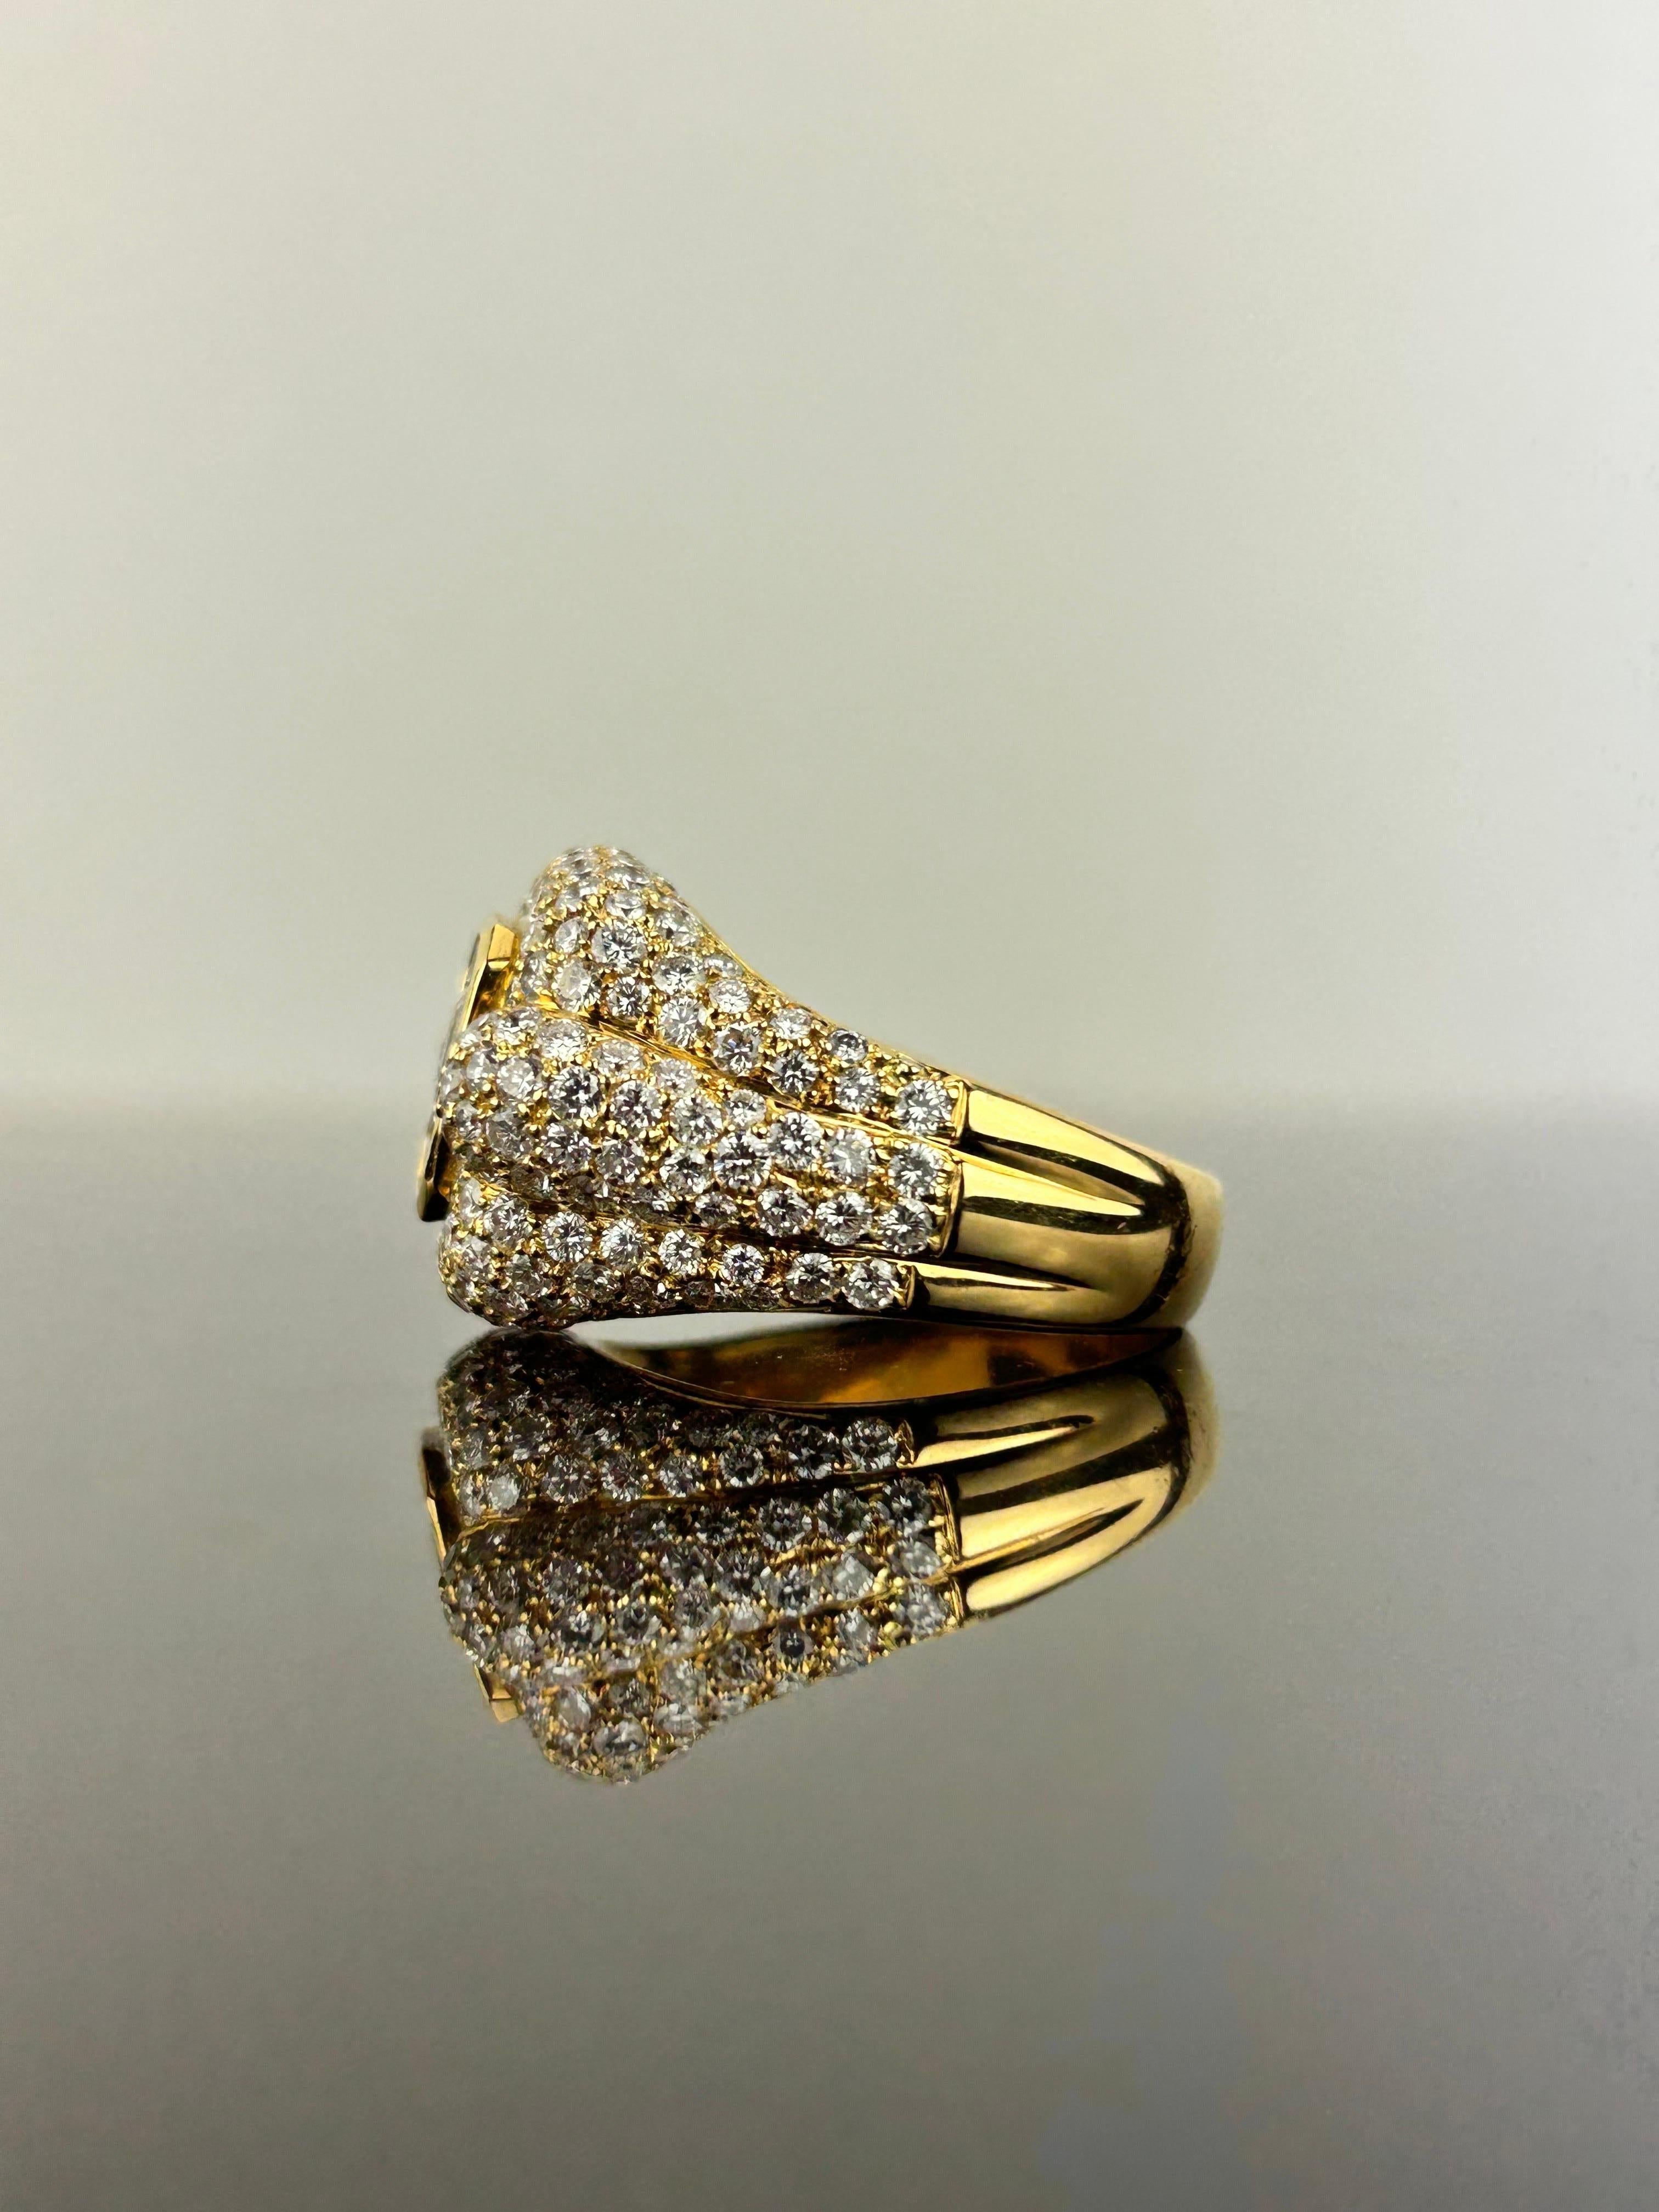 Ein atemberaubender weißer Diamant von 5,13 Karat in VVS-Qualität, gefasst in massivem 26 Gramm 18 Karat Gelbgold. Der Ring ist unisex, Größe US 9.25, kann in der Größe geändert werden. Das Zentrum ist unsichtbar gesetzt Diamanten, mit einem